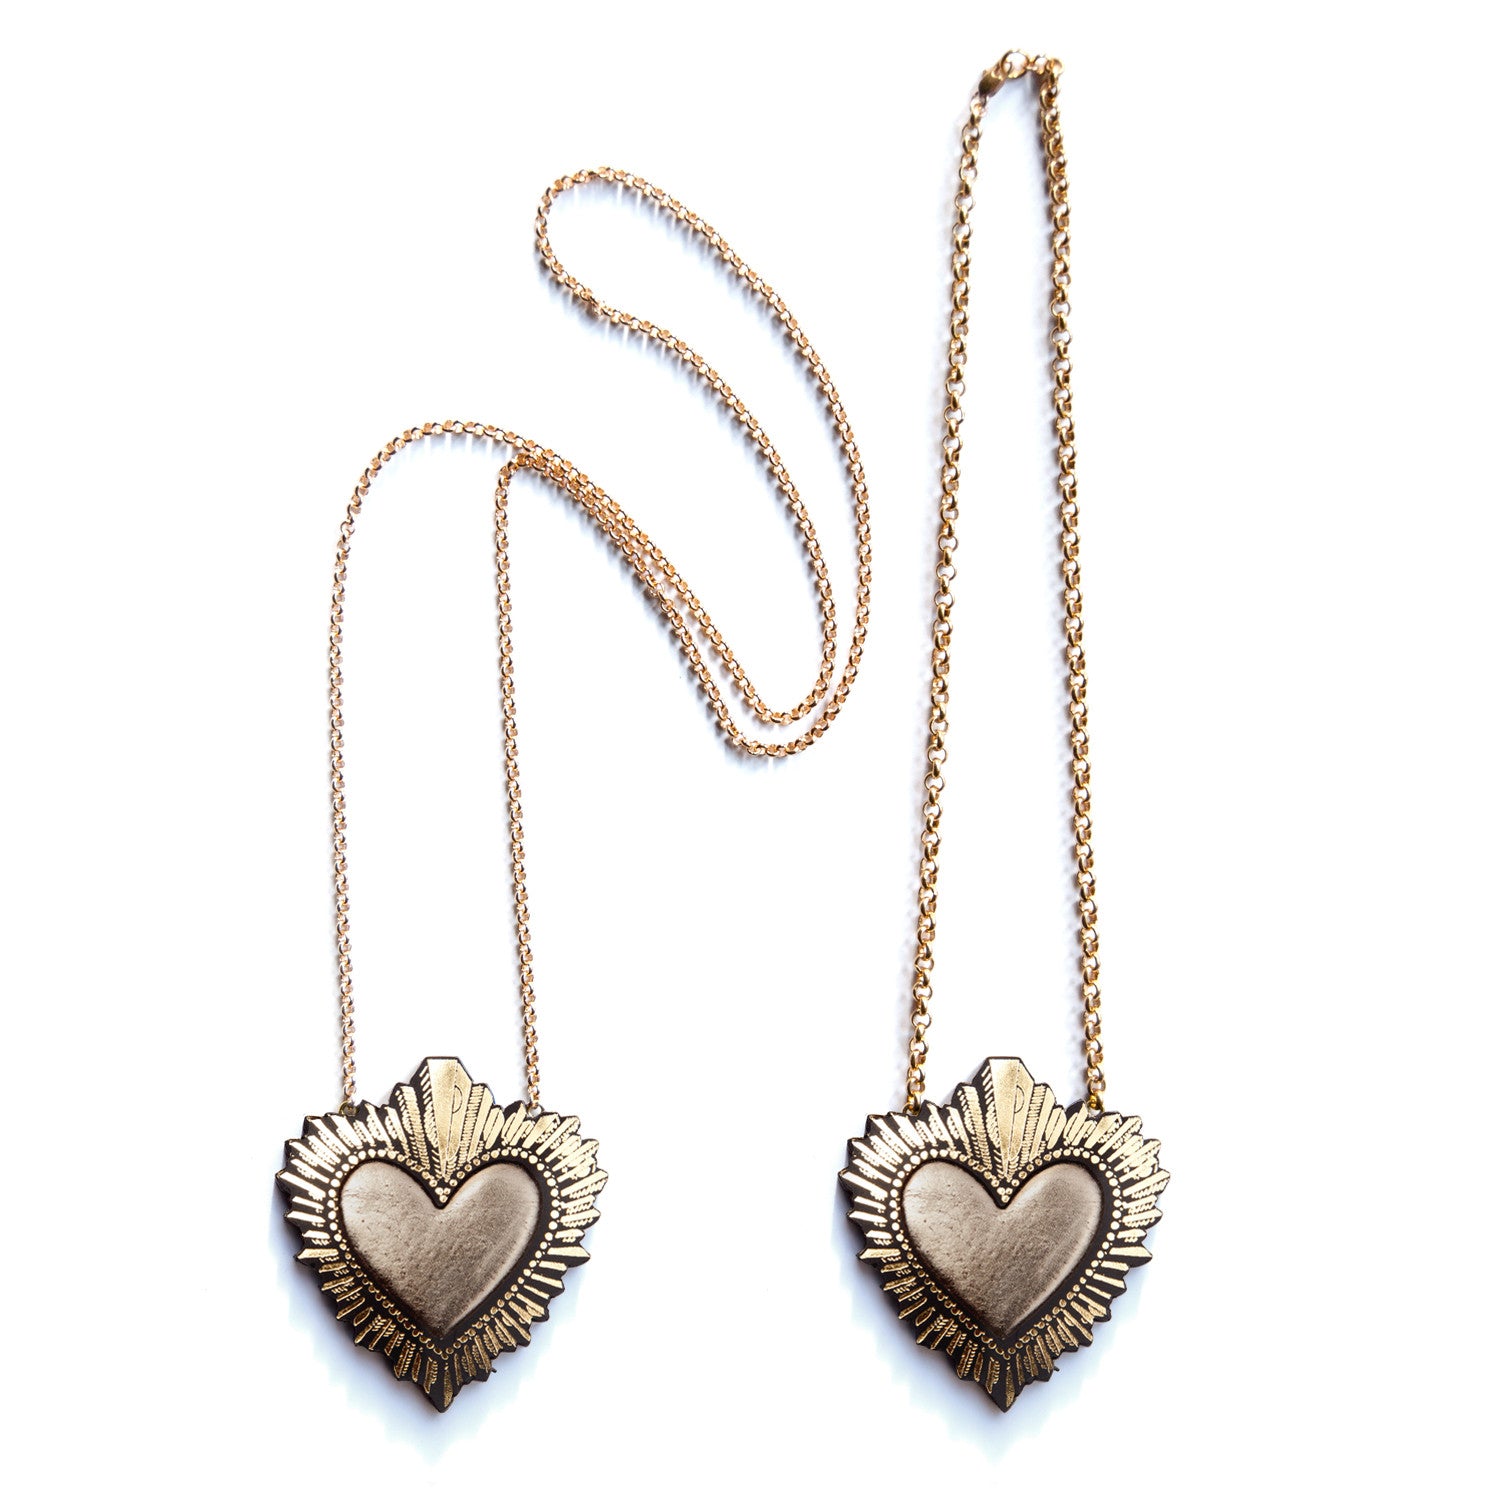 Sacred Heart pendant – Rosita Bonita